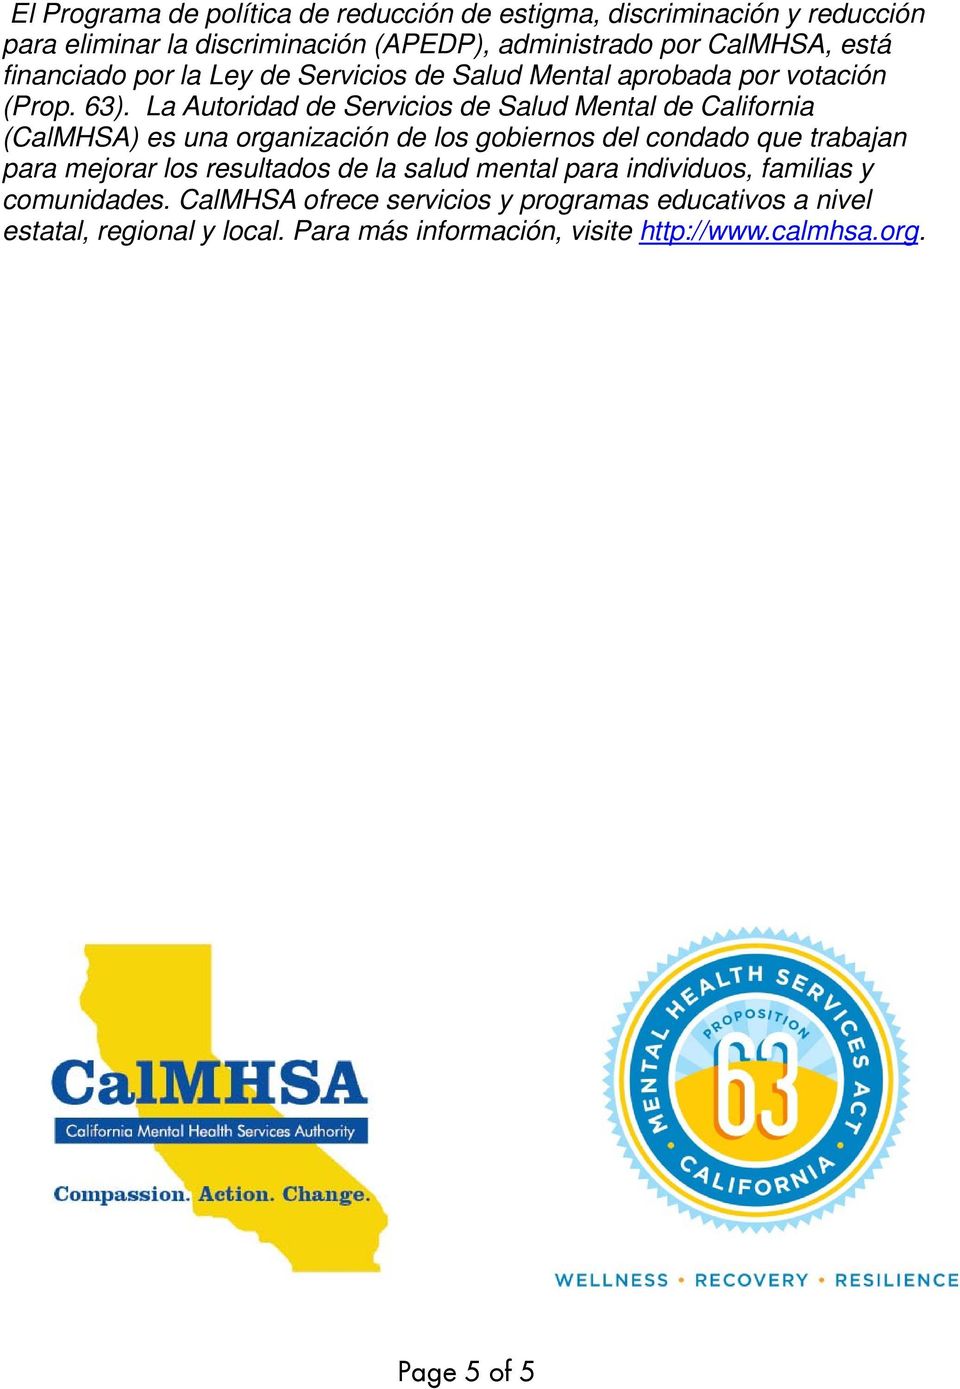 La Autoridad de Servicios de Salud Mental de California (CalMHSA) es una organización de los gobiernos del condado que trabajan para mejorar los